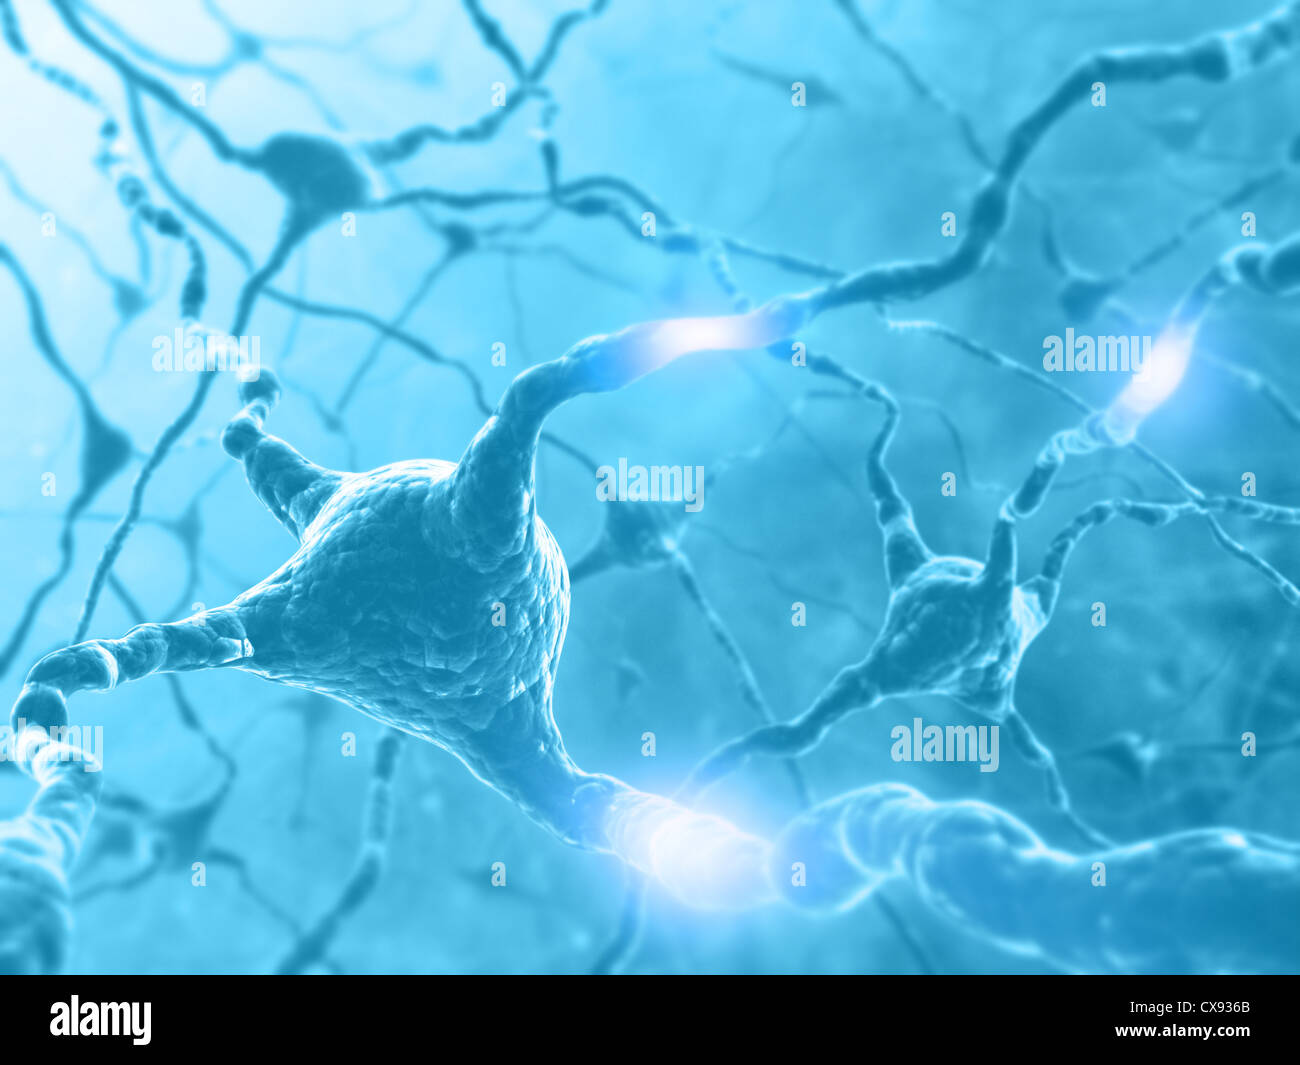 Im Inneren des Gehirns. Konzept der Neuronen und des Nervensystems. Zwei Neuronen, die Übertragung von Informationen. Stockfoto